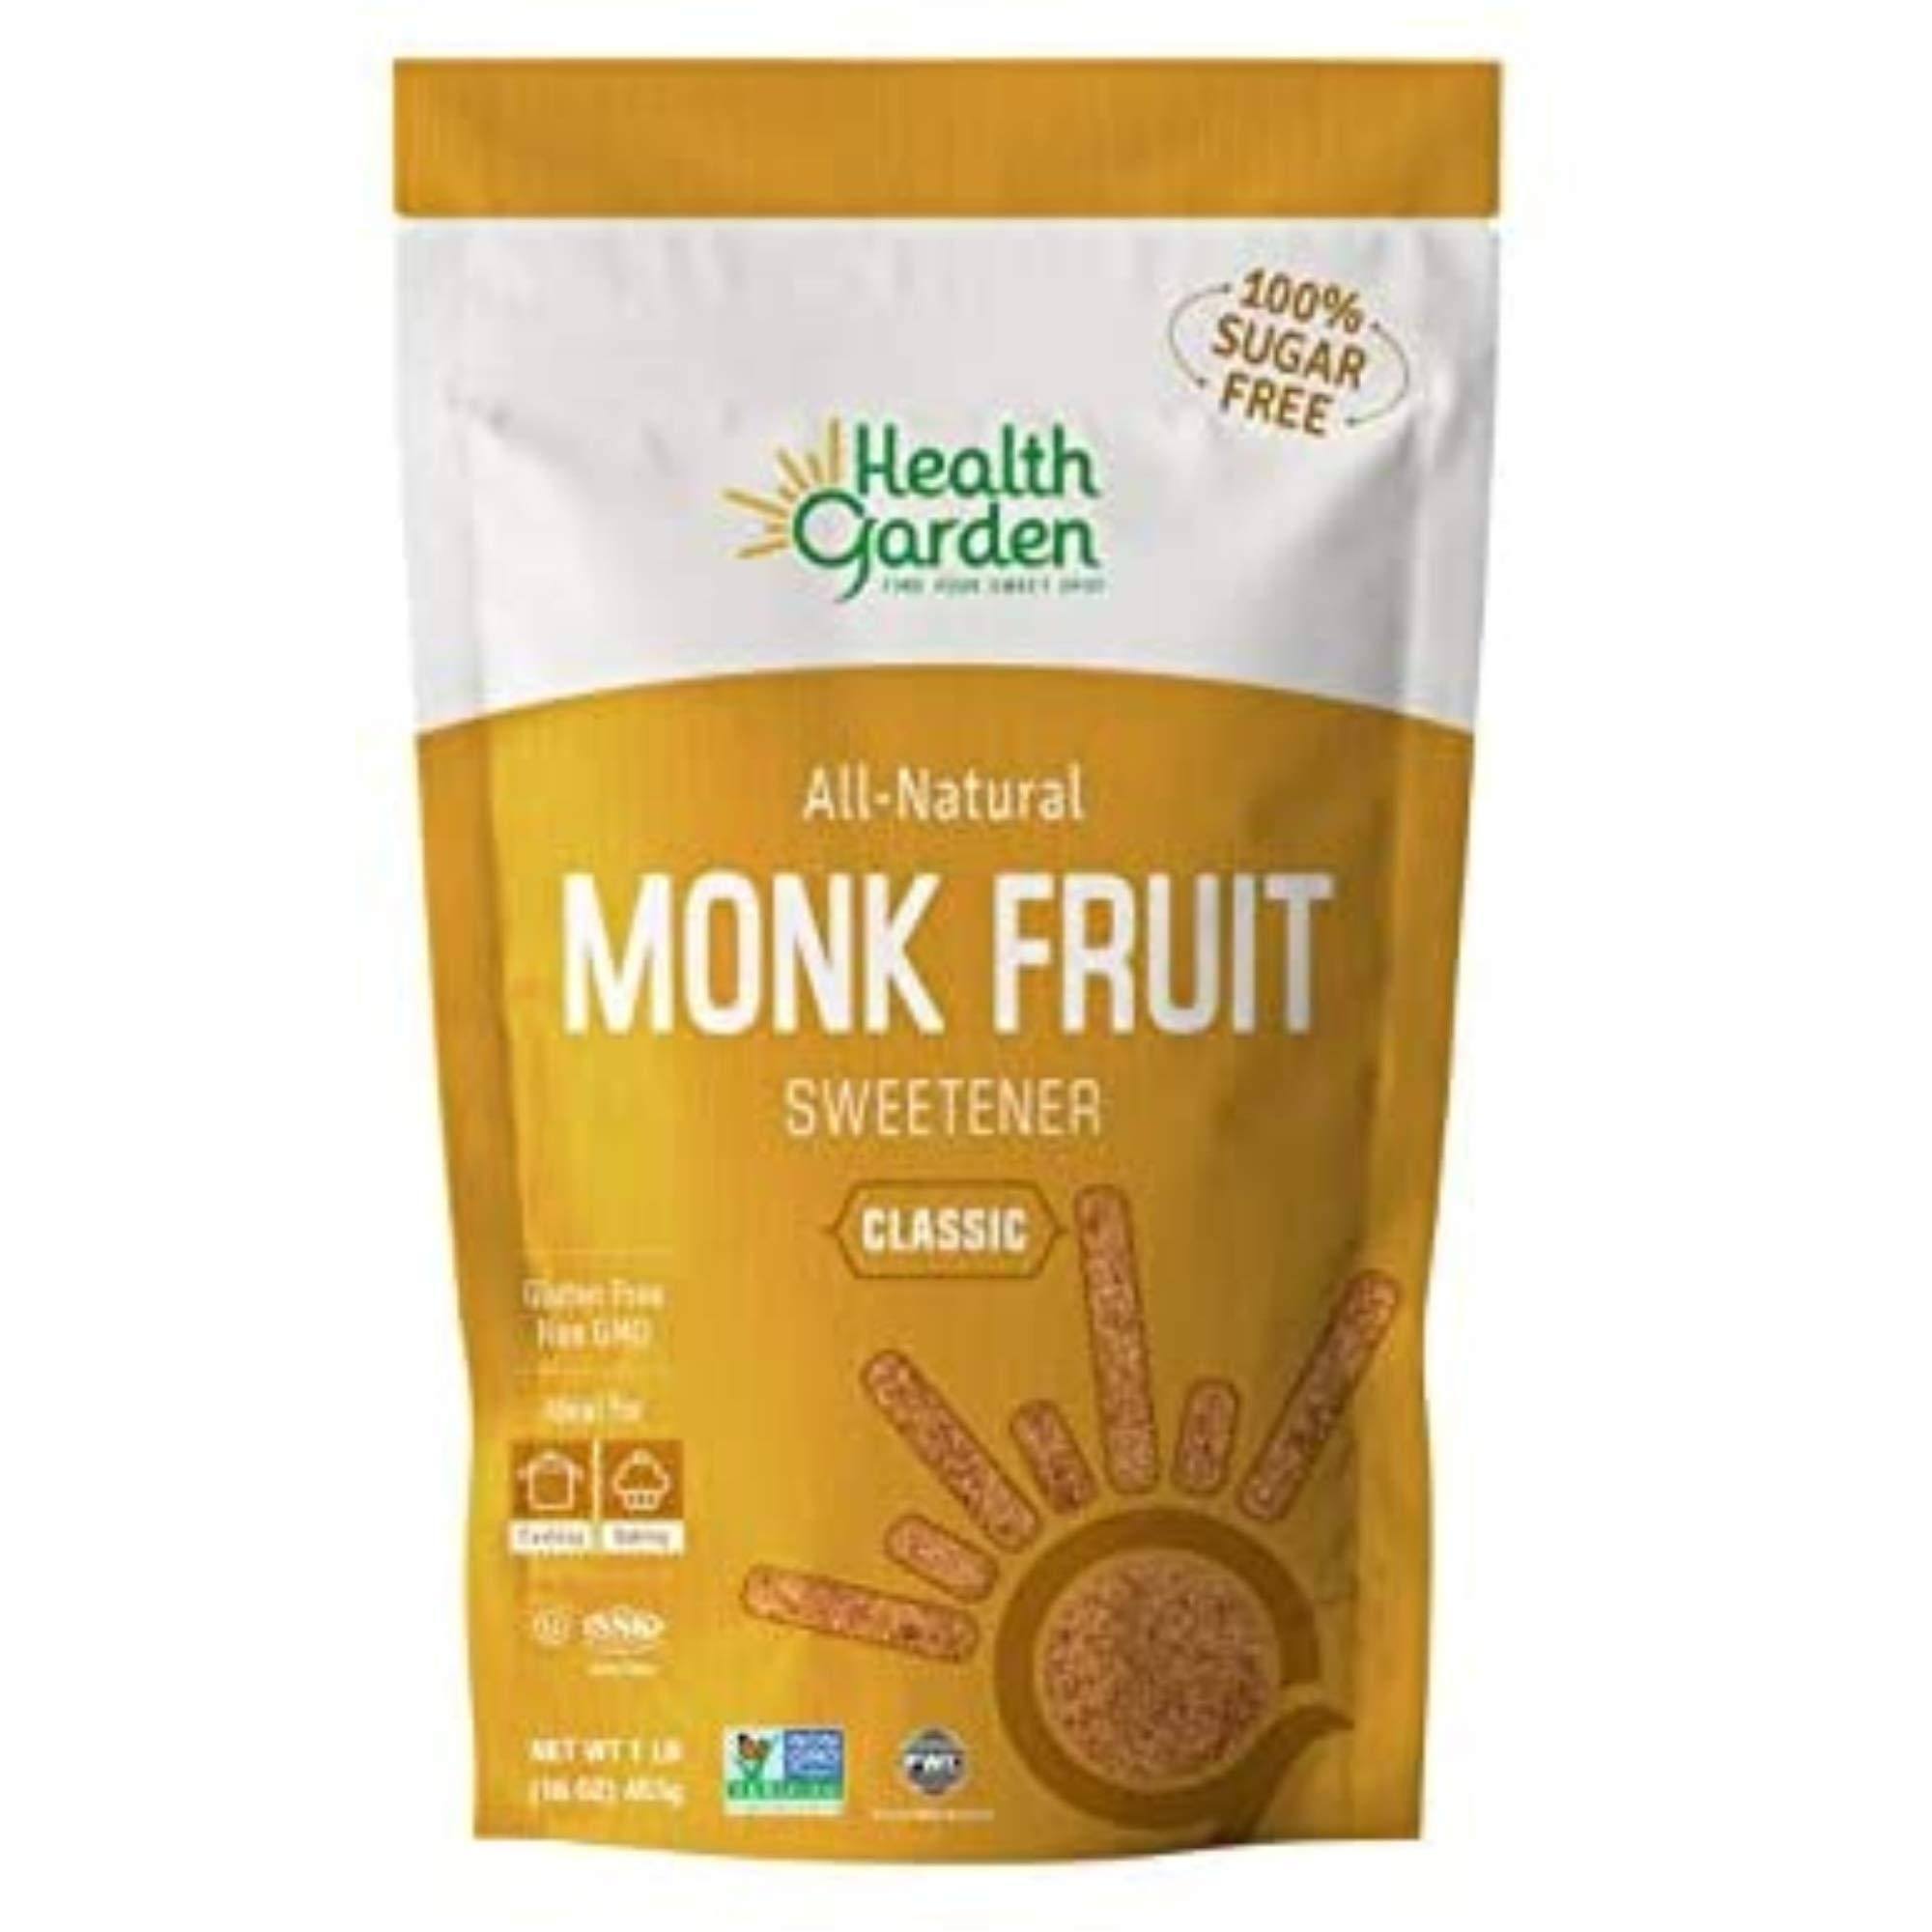 Health Garden Classic Sweetener - Monk Fruit, 16oz